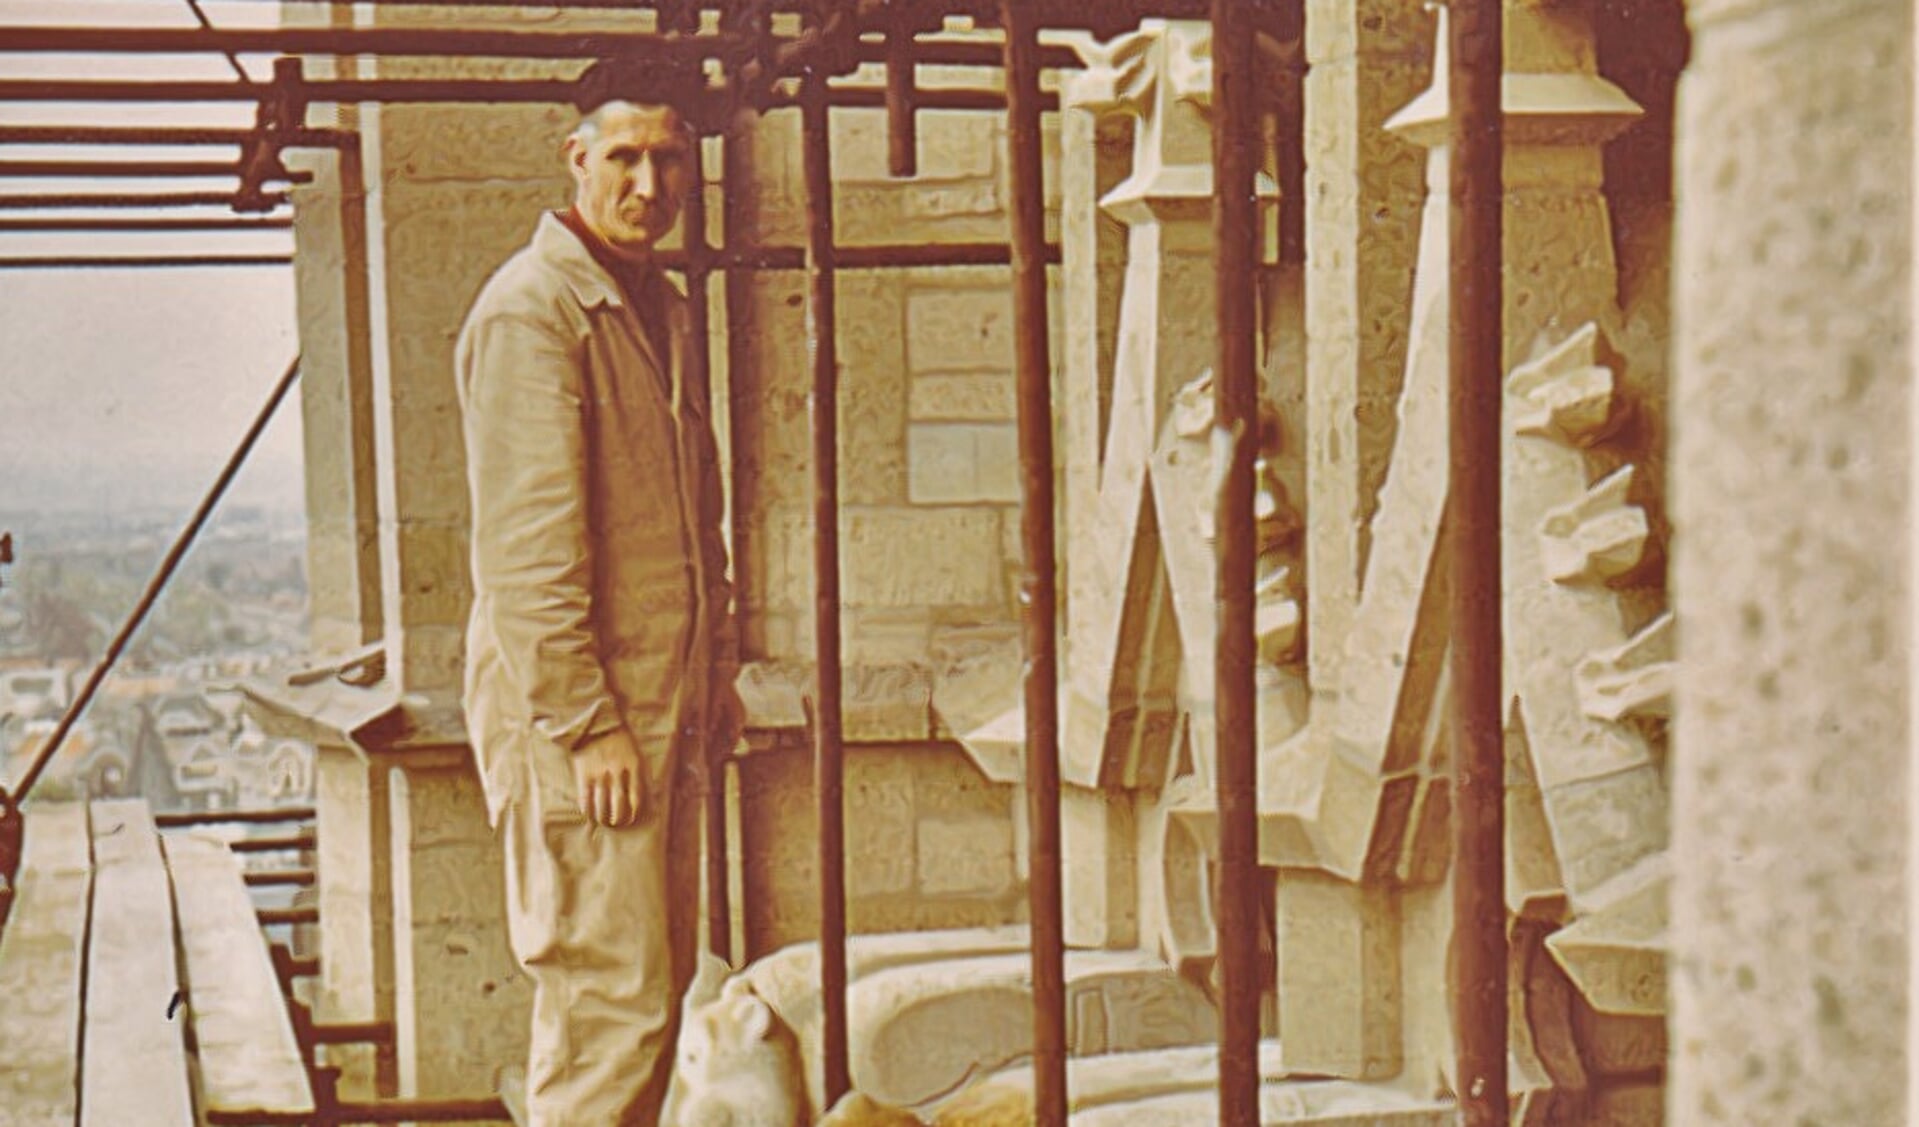 Henk Vreeling bij zijn beelden hoog boven Arnhem in de kerktoren. Foto uit de publicatie 'Een kerk als tijdsbeeld' 